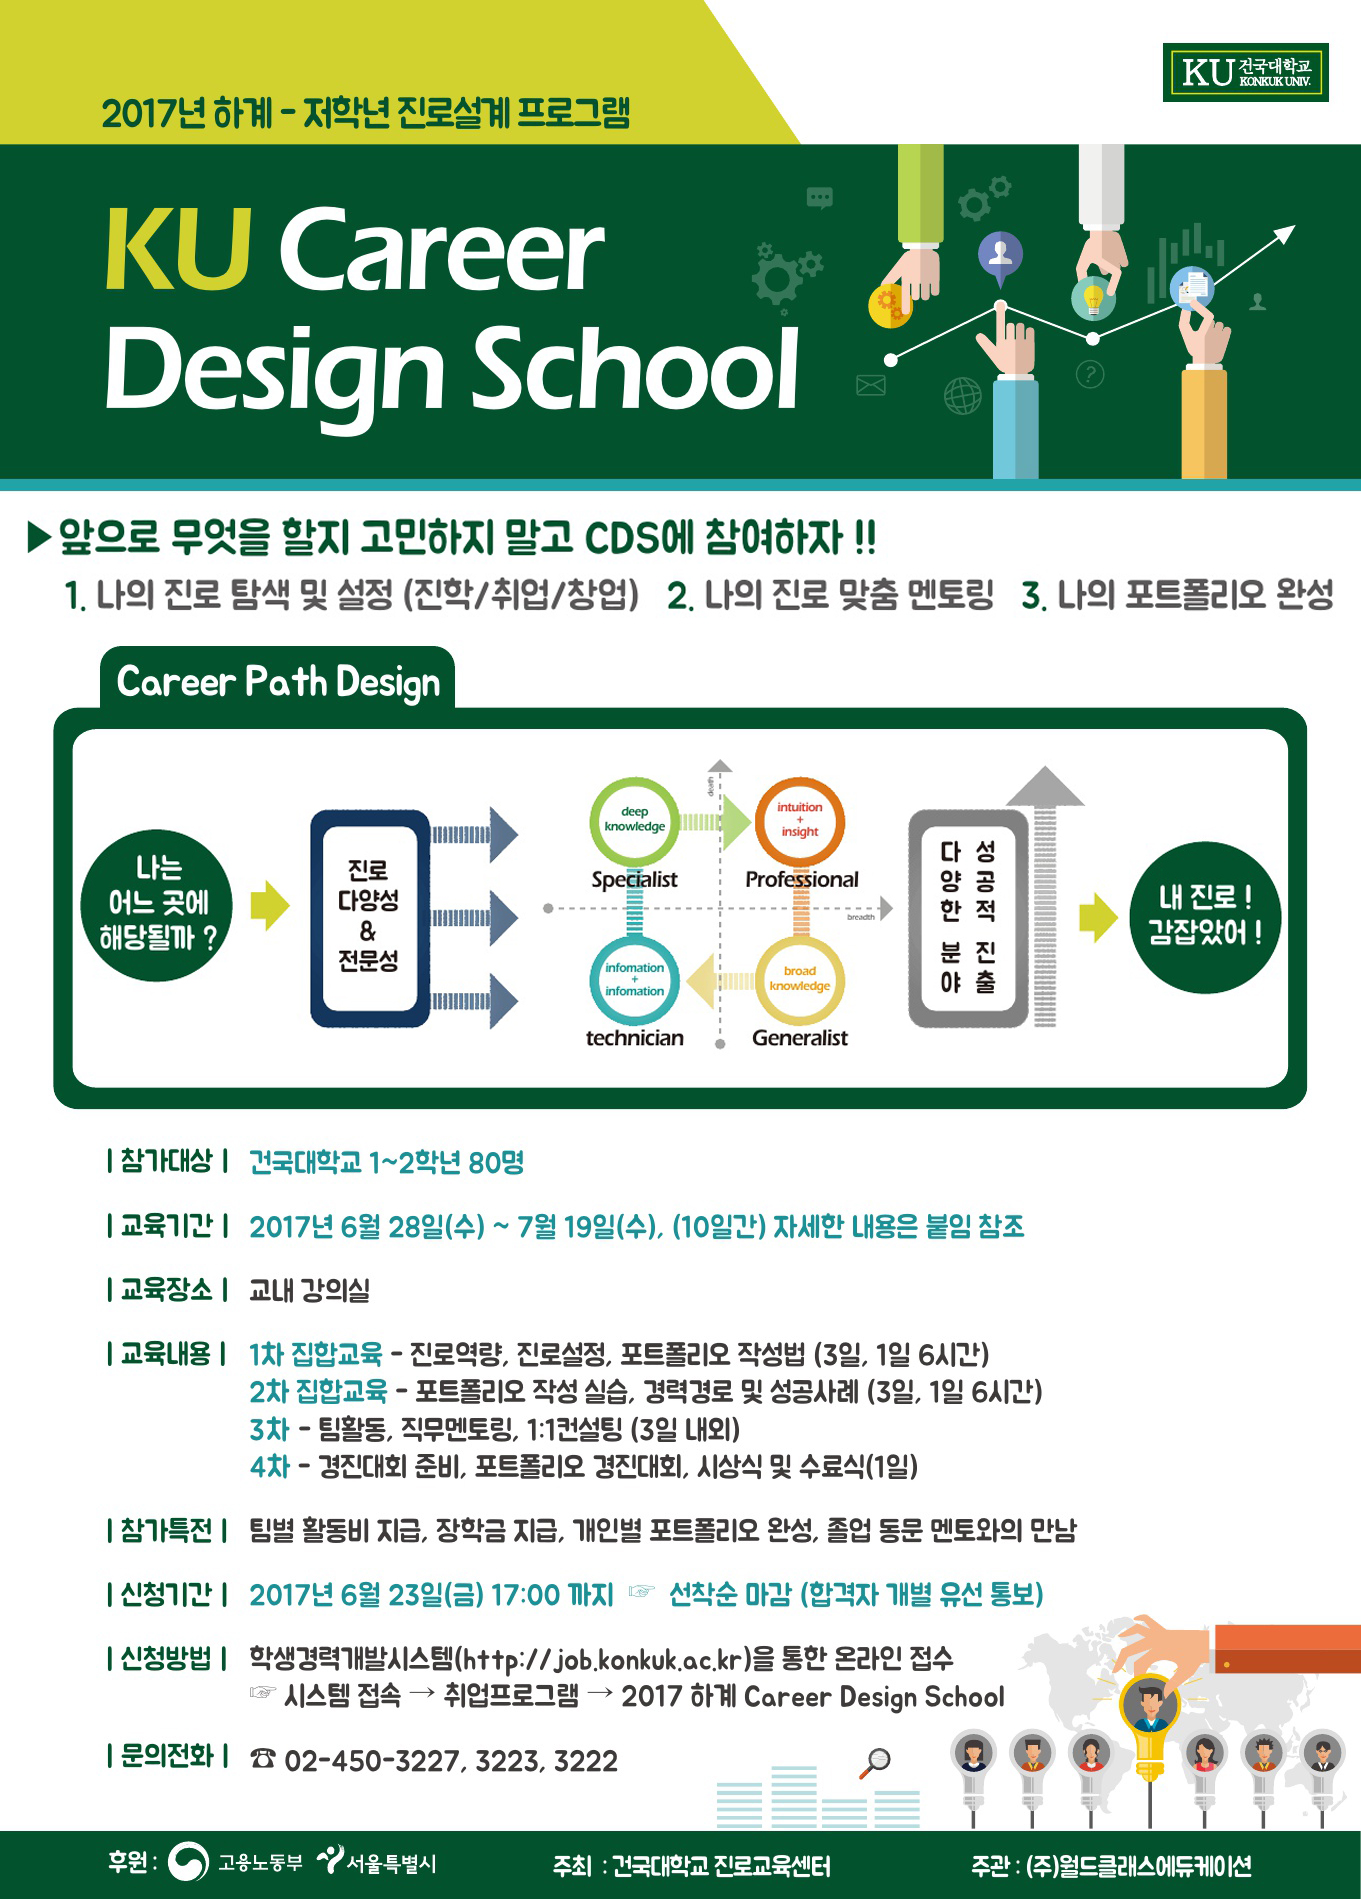 [붙임1] 2017 하계 Career Design School 홍보물.jpg